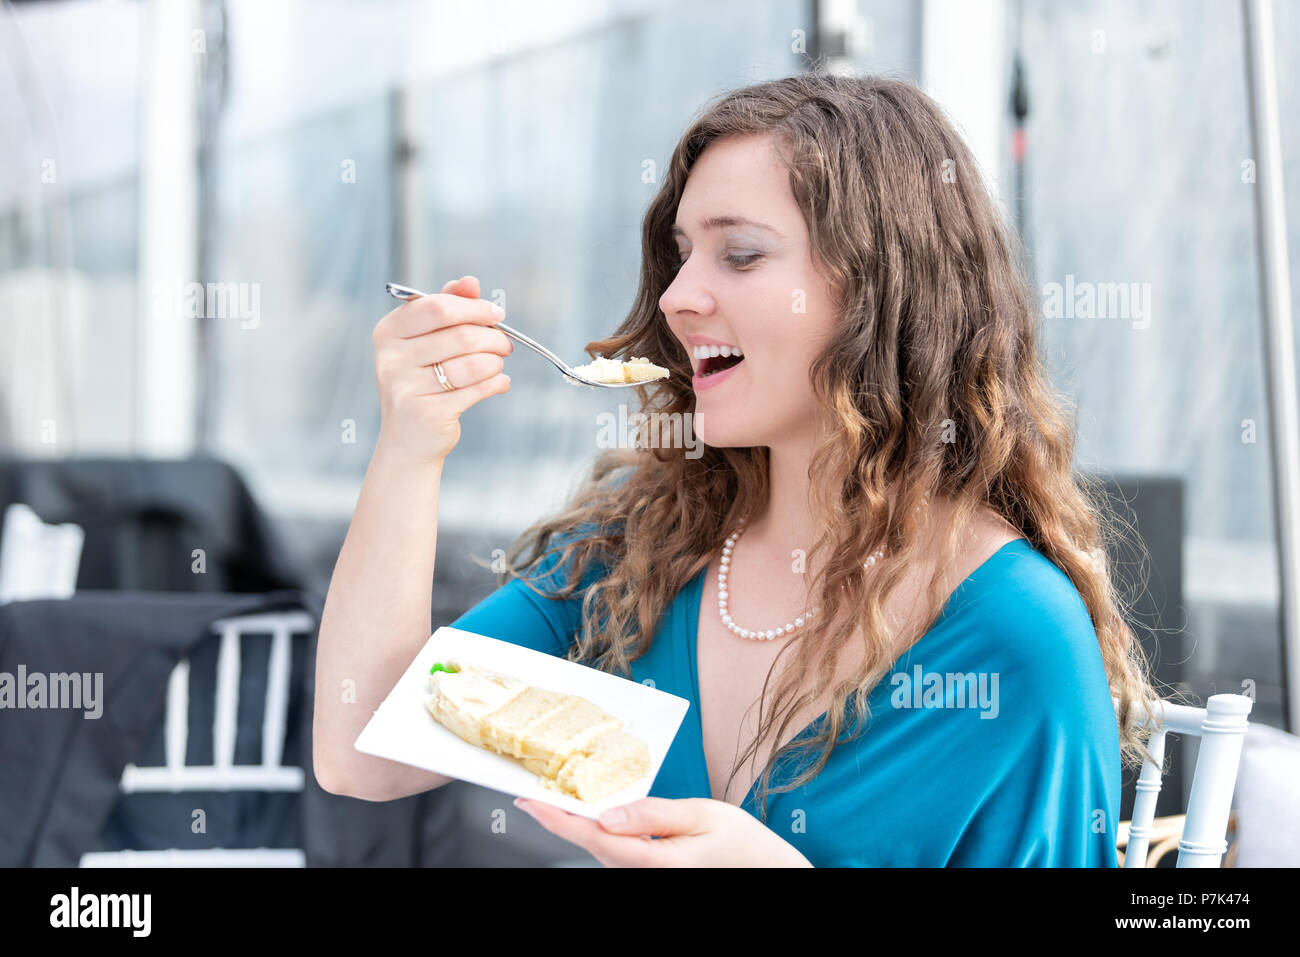 Élégant jeune smiling happy woman eating cake, bouche ouverte avec profil latéral fourche à réception de mariage dessert dîner, sitting at table Banque D'Images